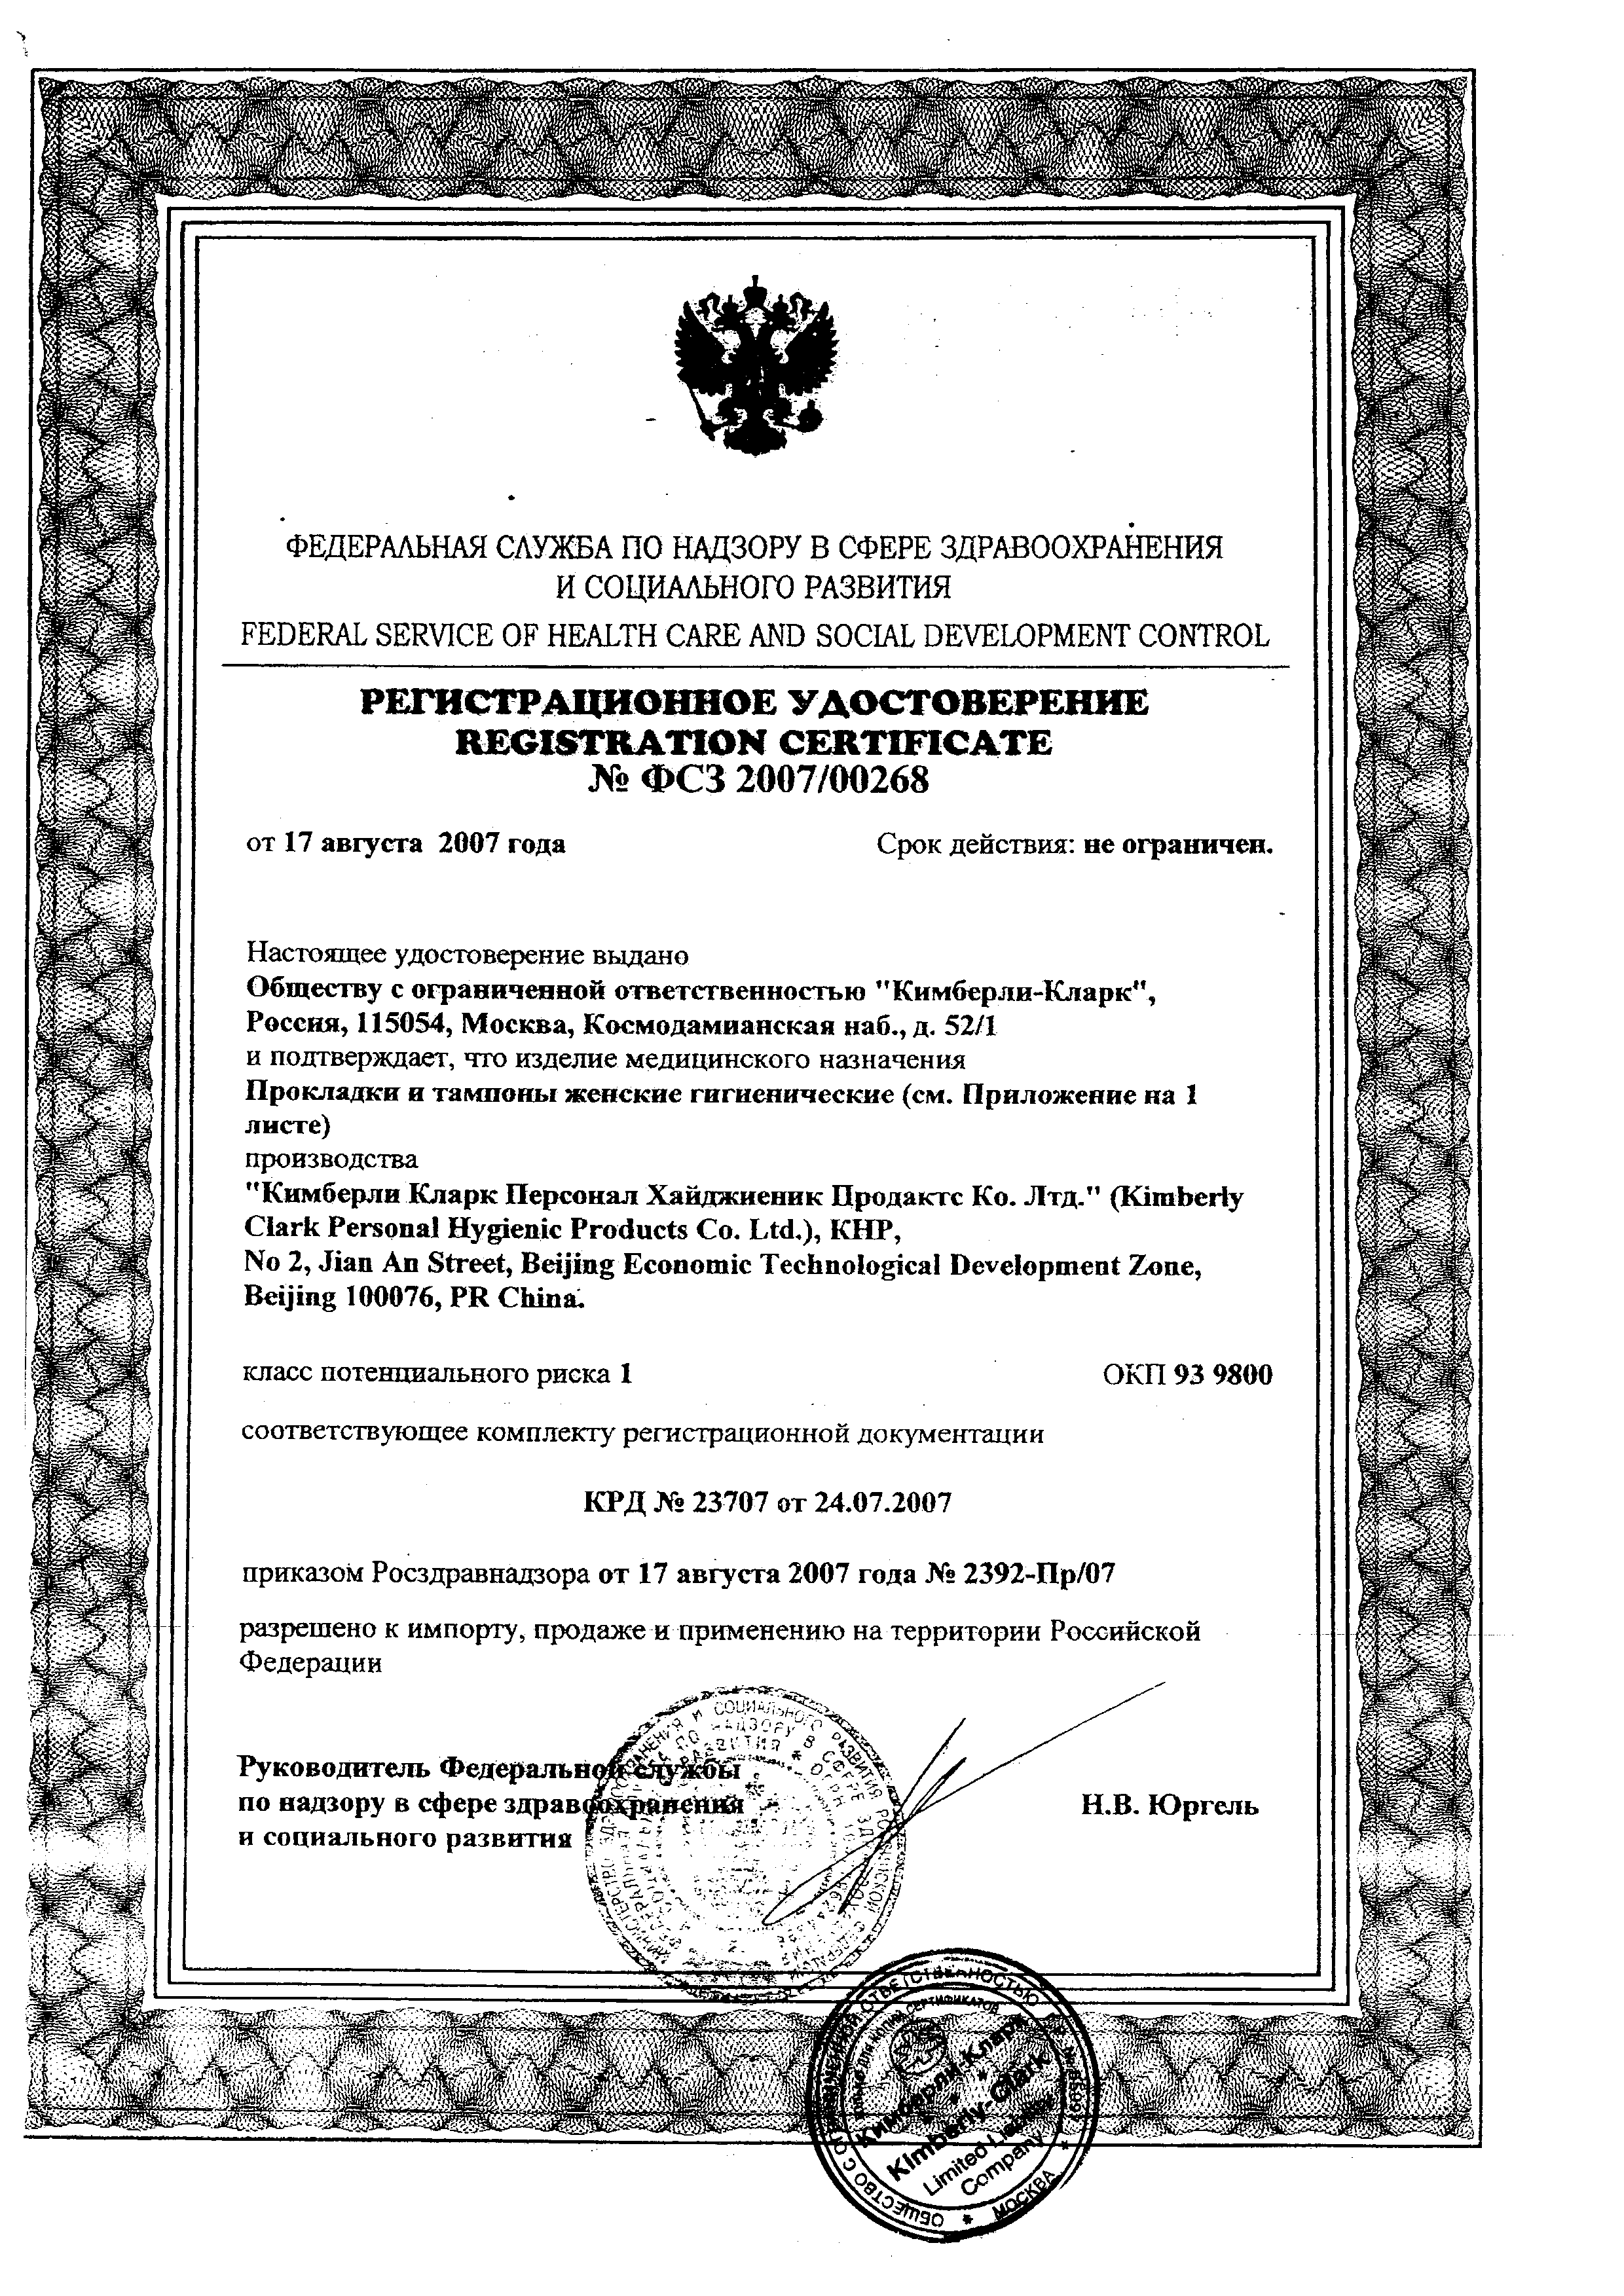 Kotex Normal тампоны женские гигиенические сертификат